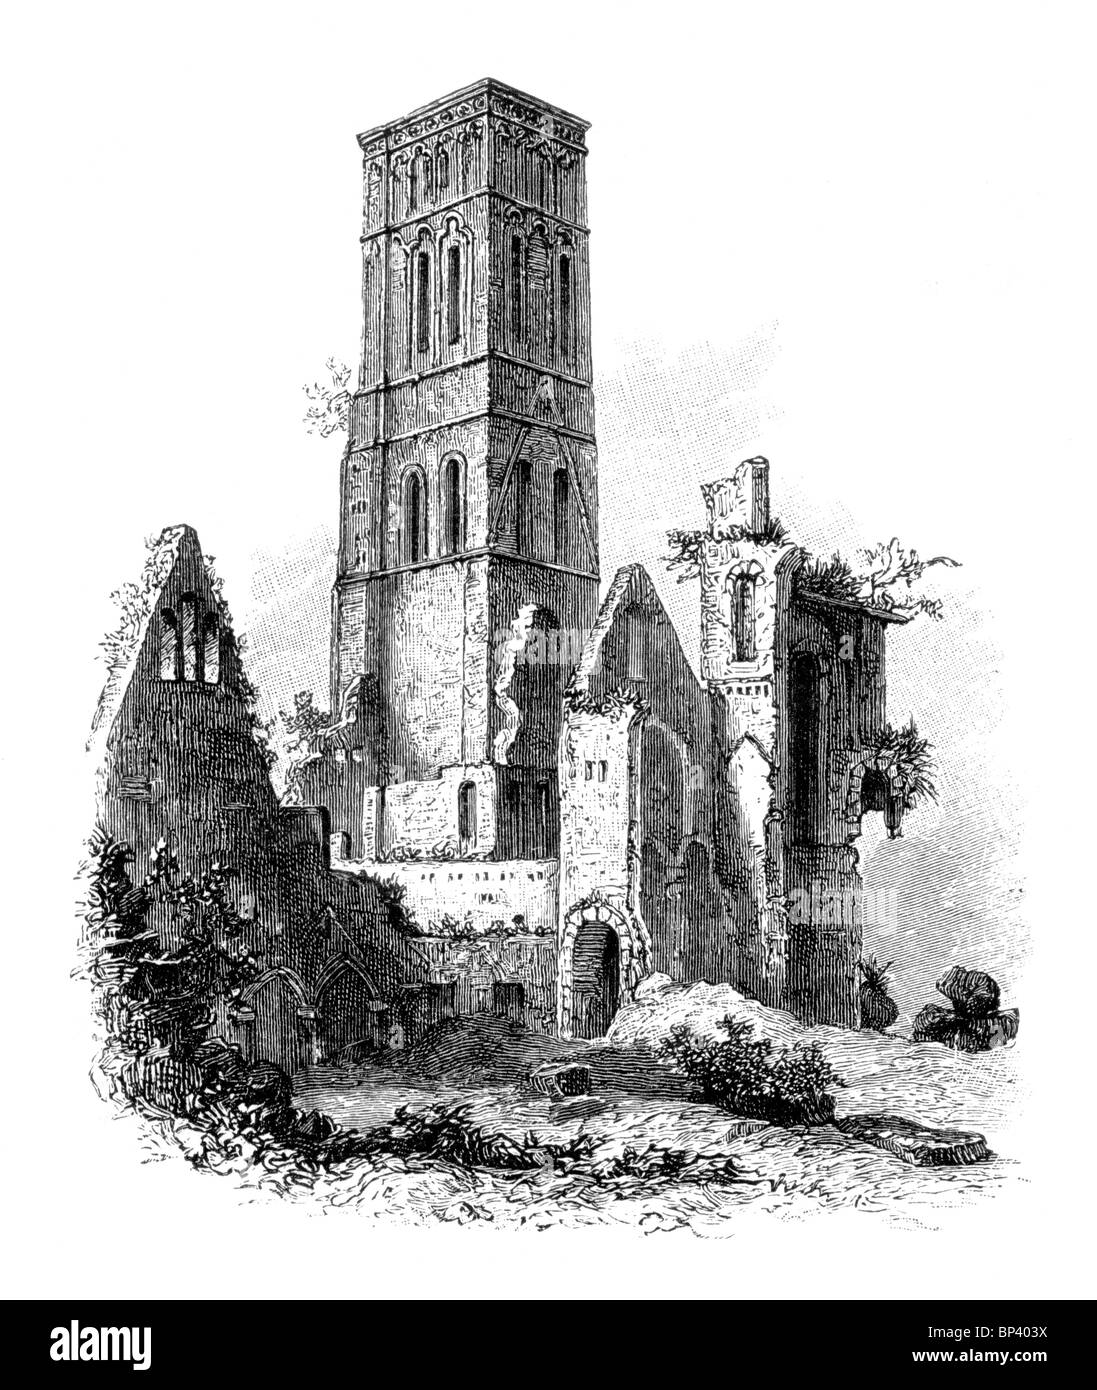 Illustration noir et blanc ; les ruines de l'abbaye, Oxford Osney 17e siècle Banque D'Images